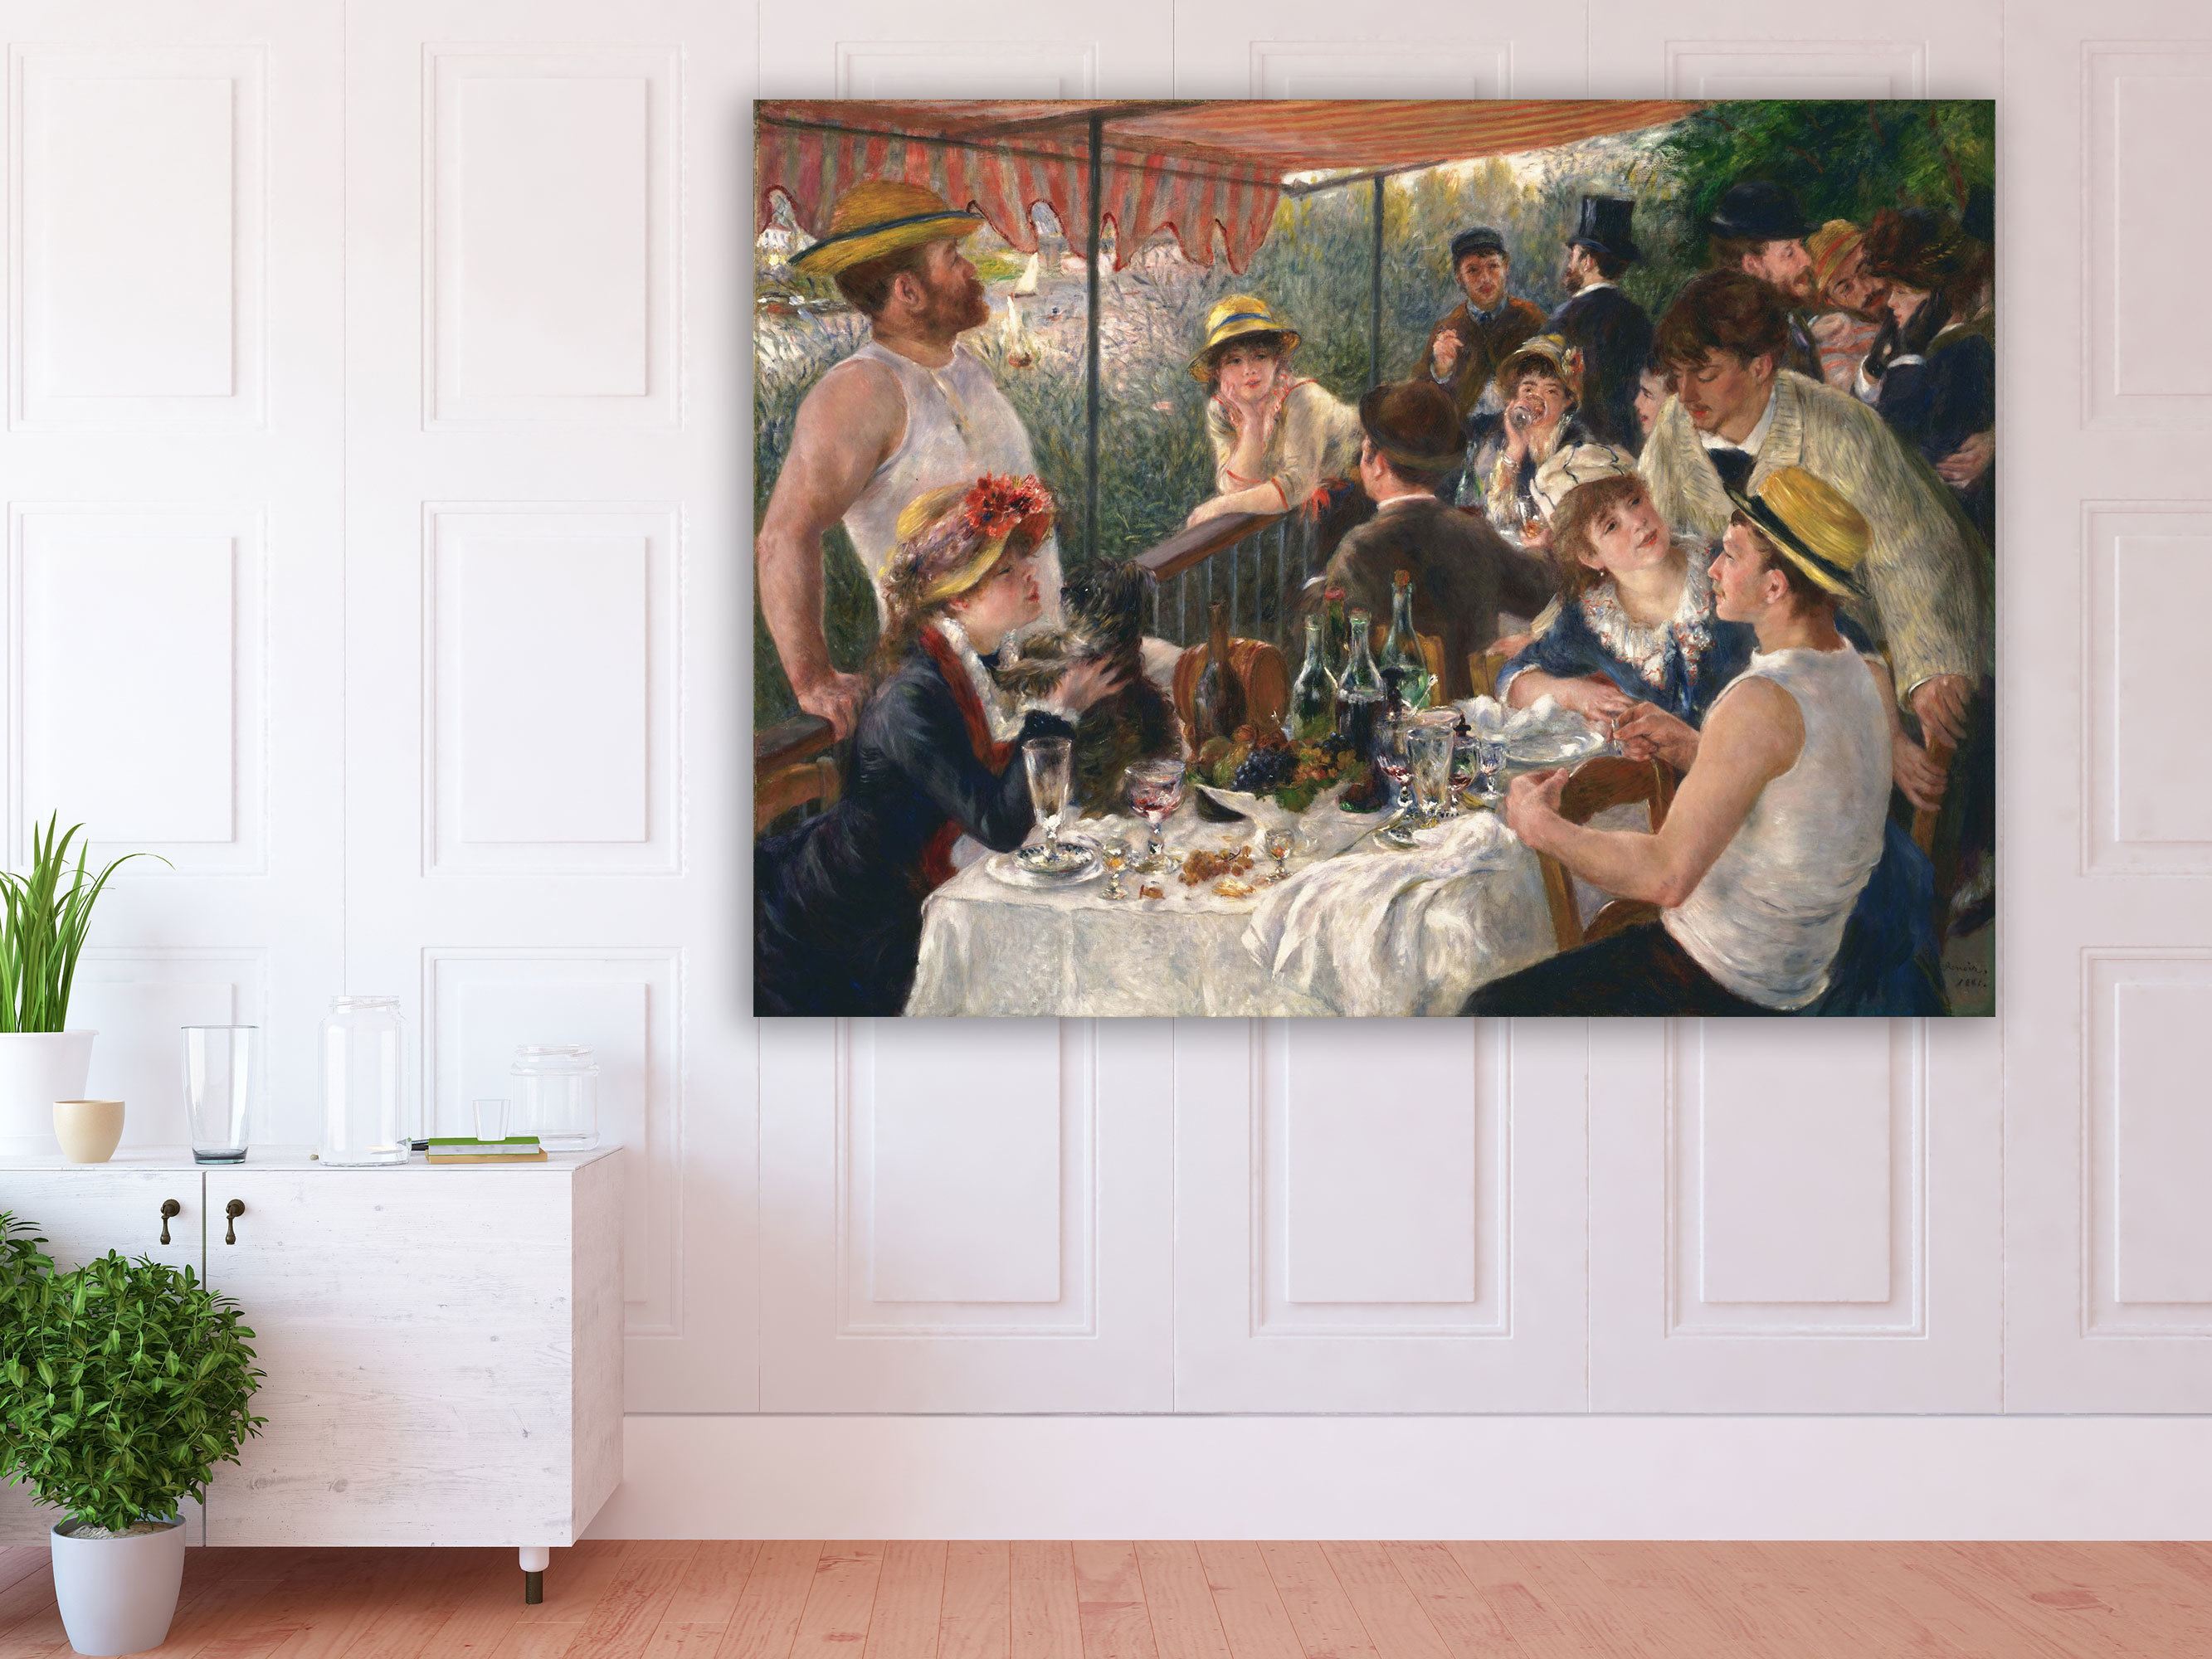 Auguste Renoir - Das Frühstück der Ruderer, 1881